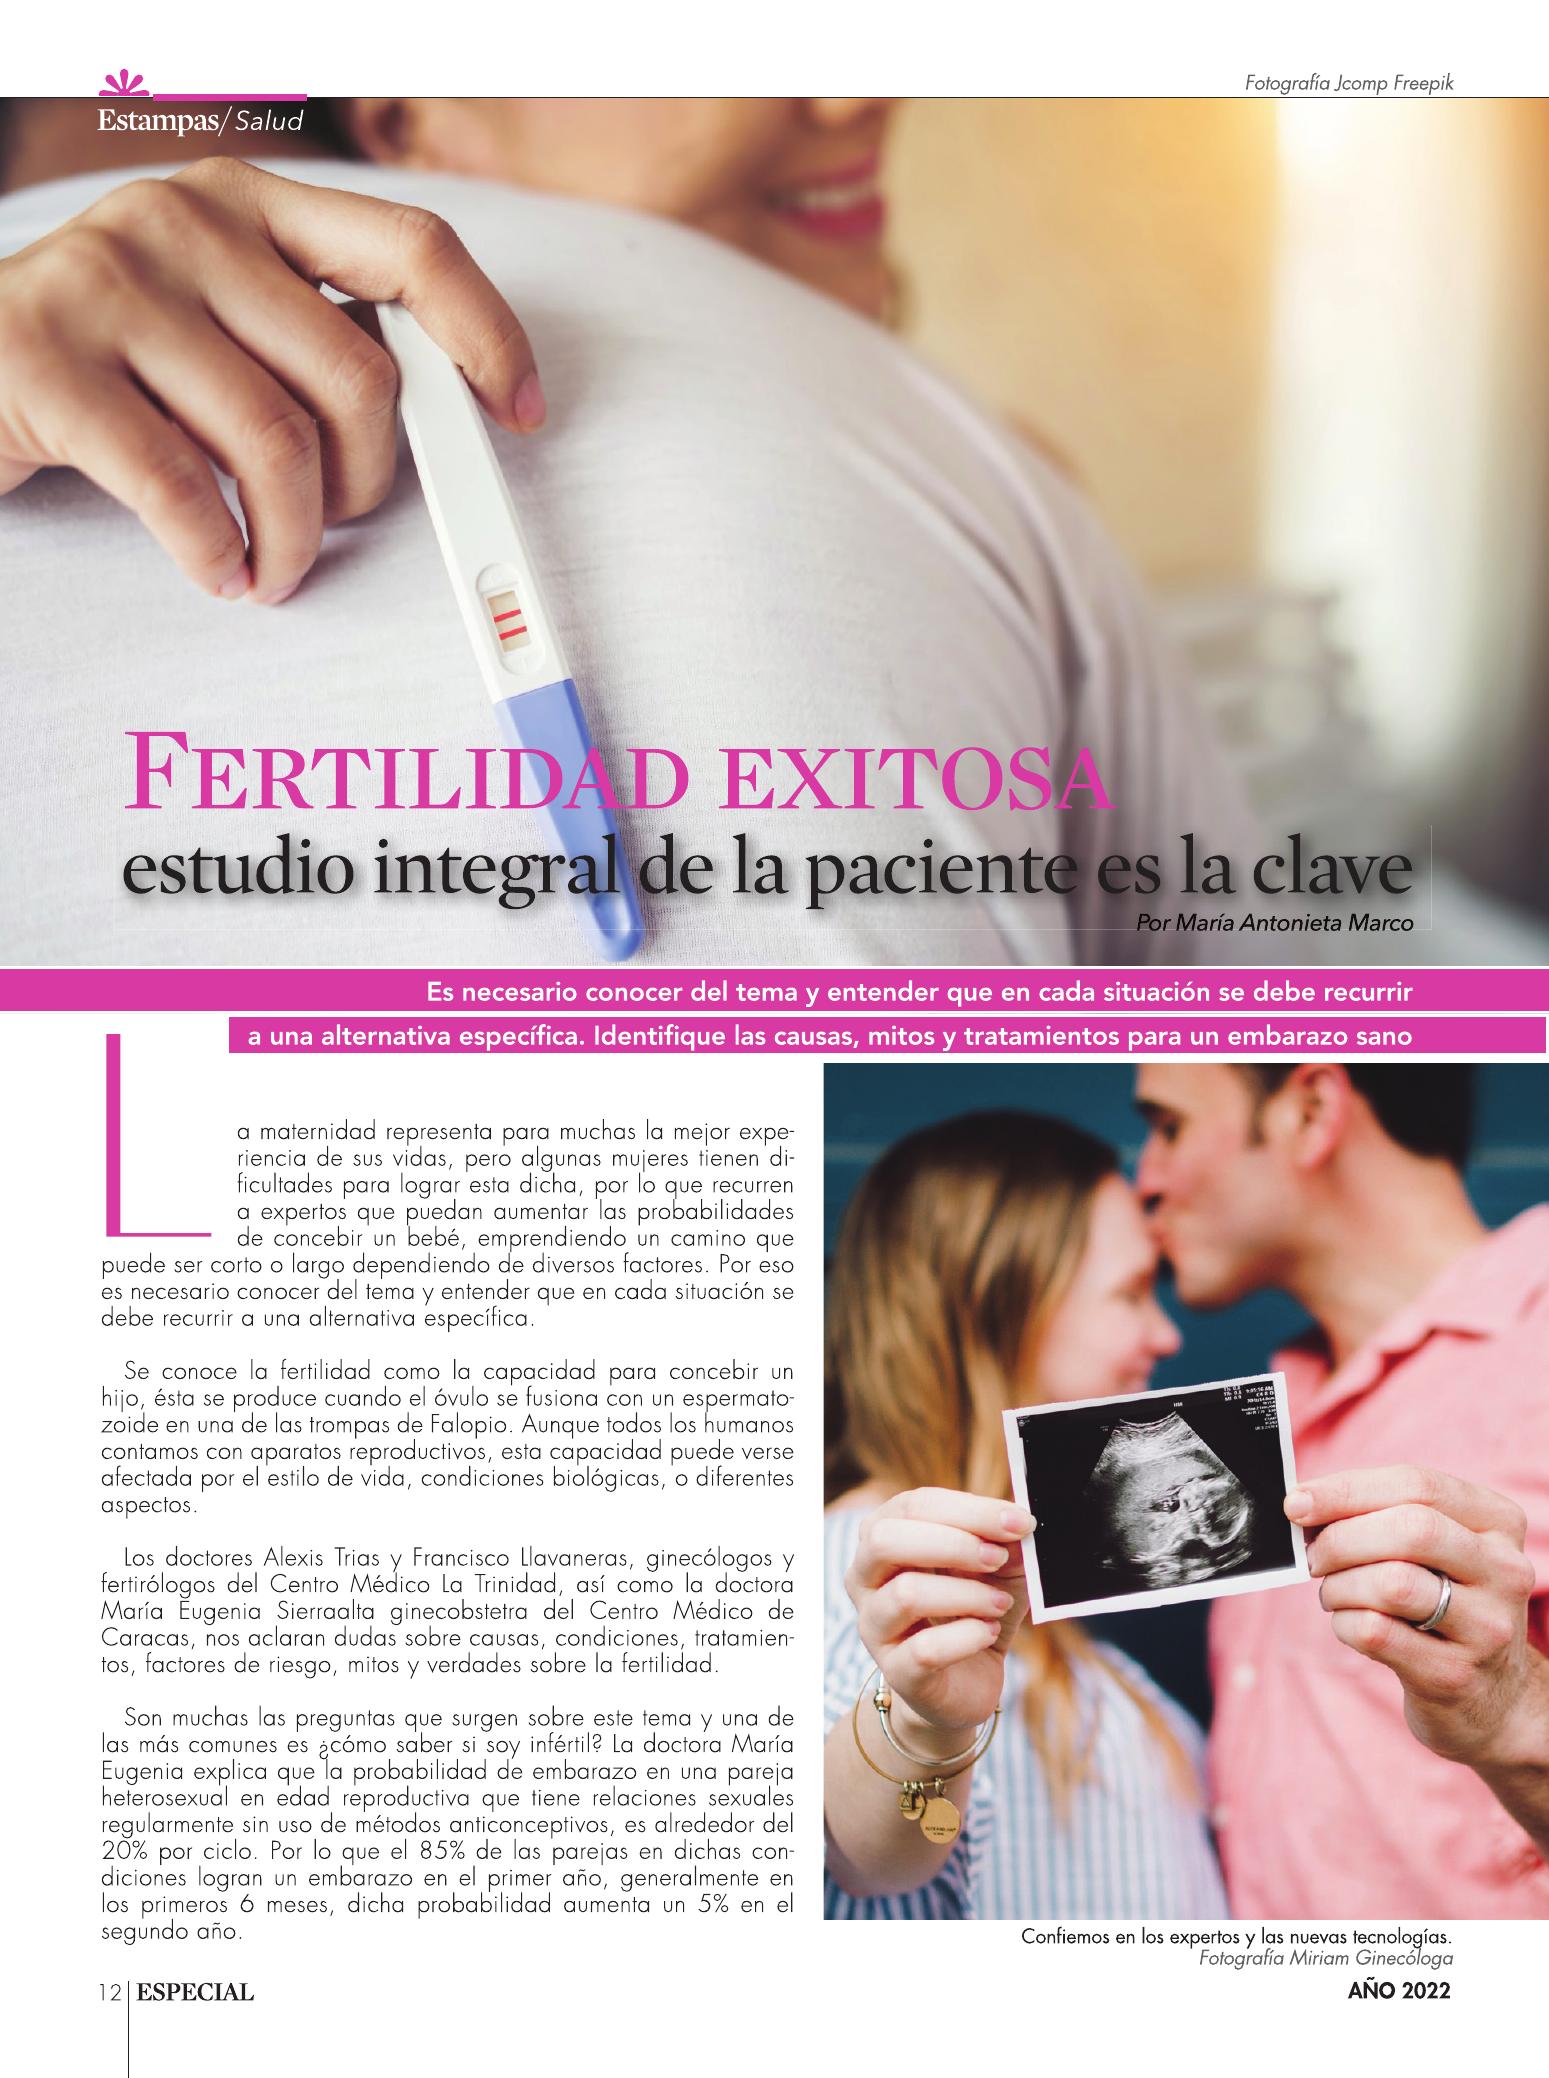 12-REV Fertilidad exitosa estudio integral de la paciente es la clave